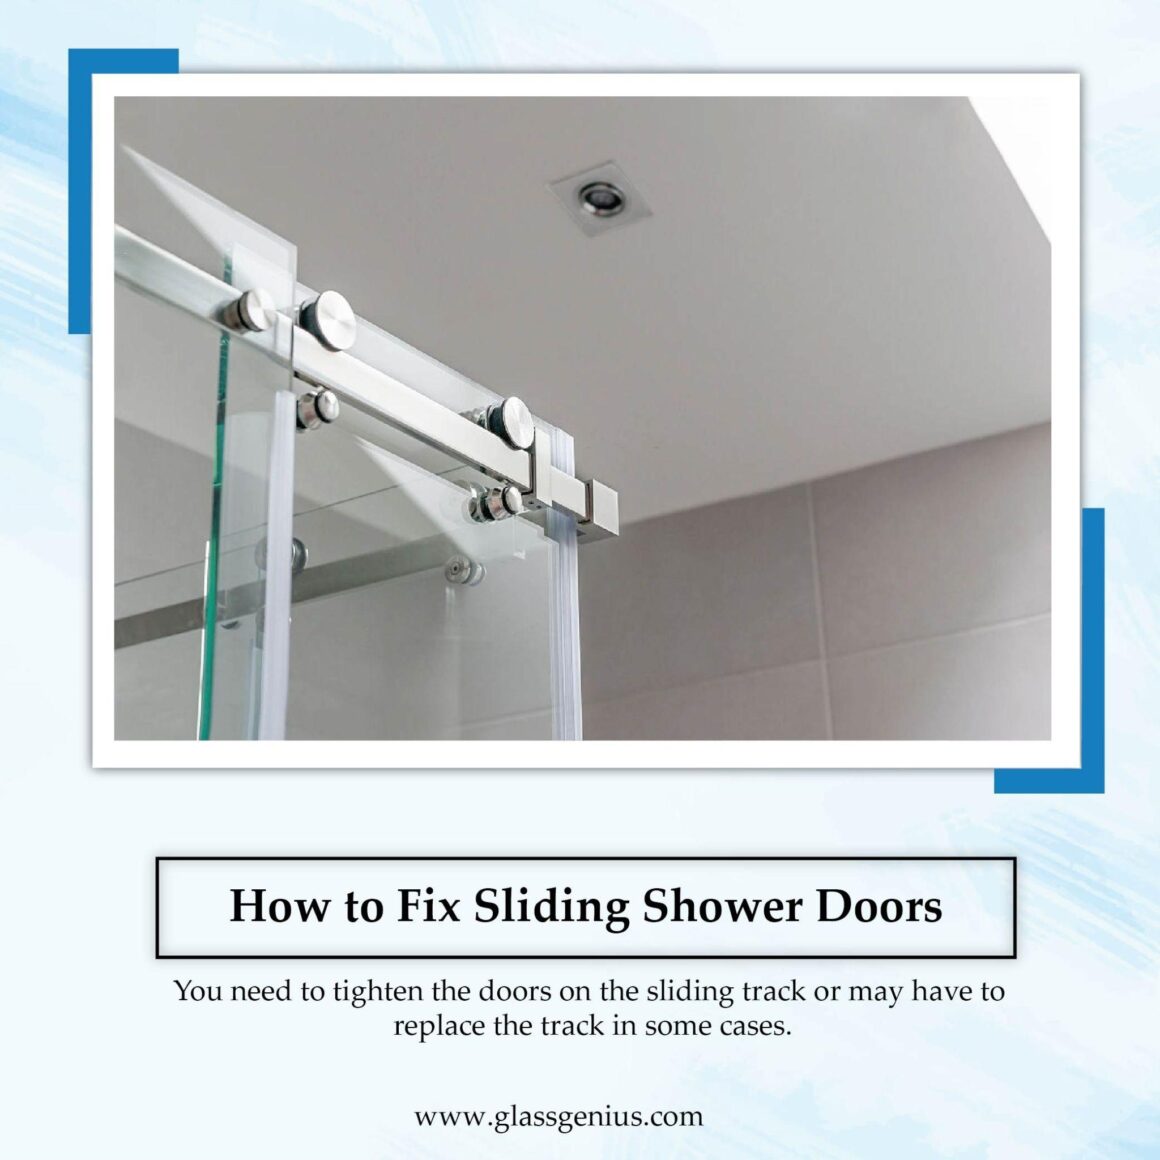 Fixing Sliding Shower Doors